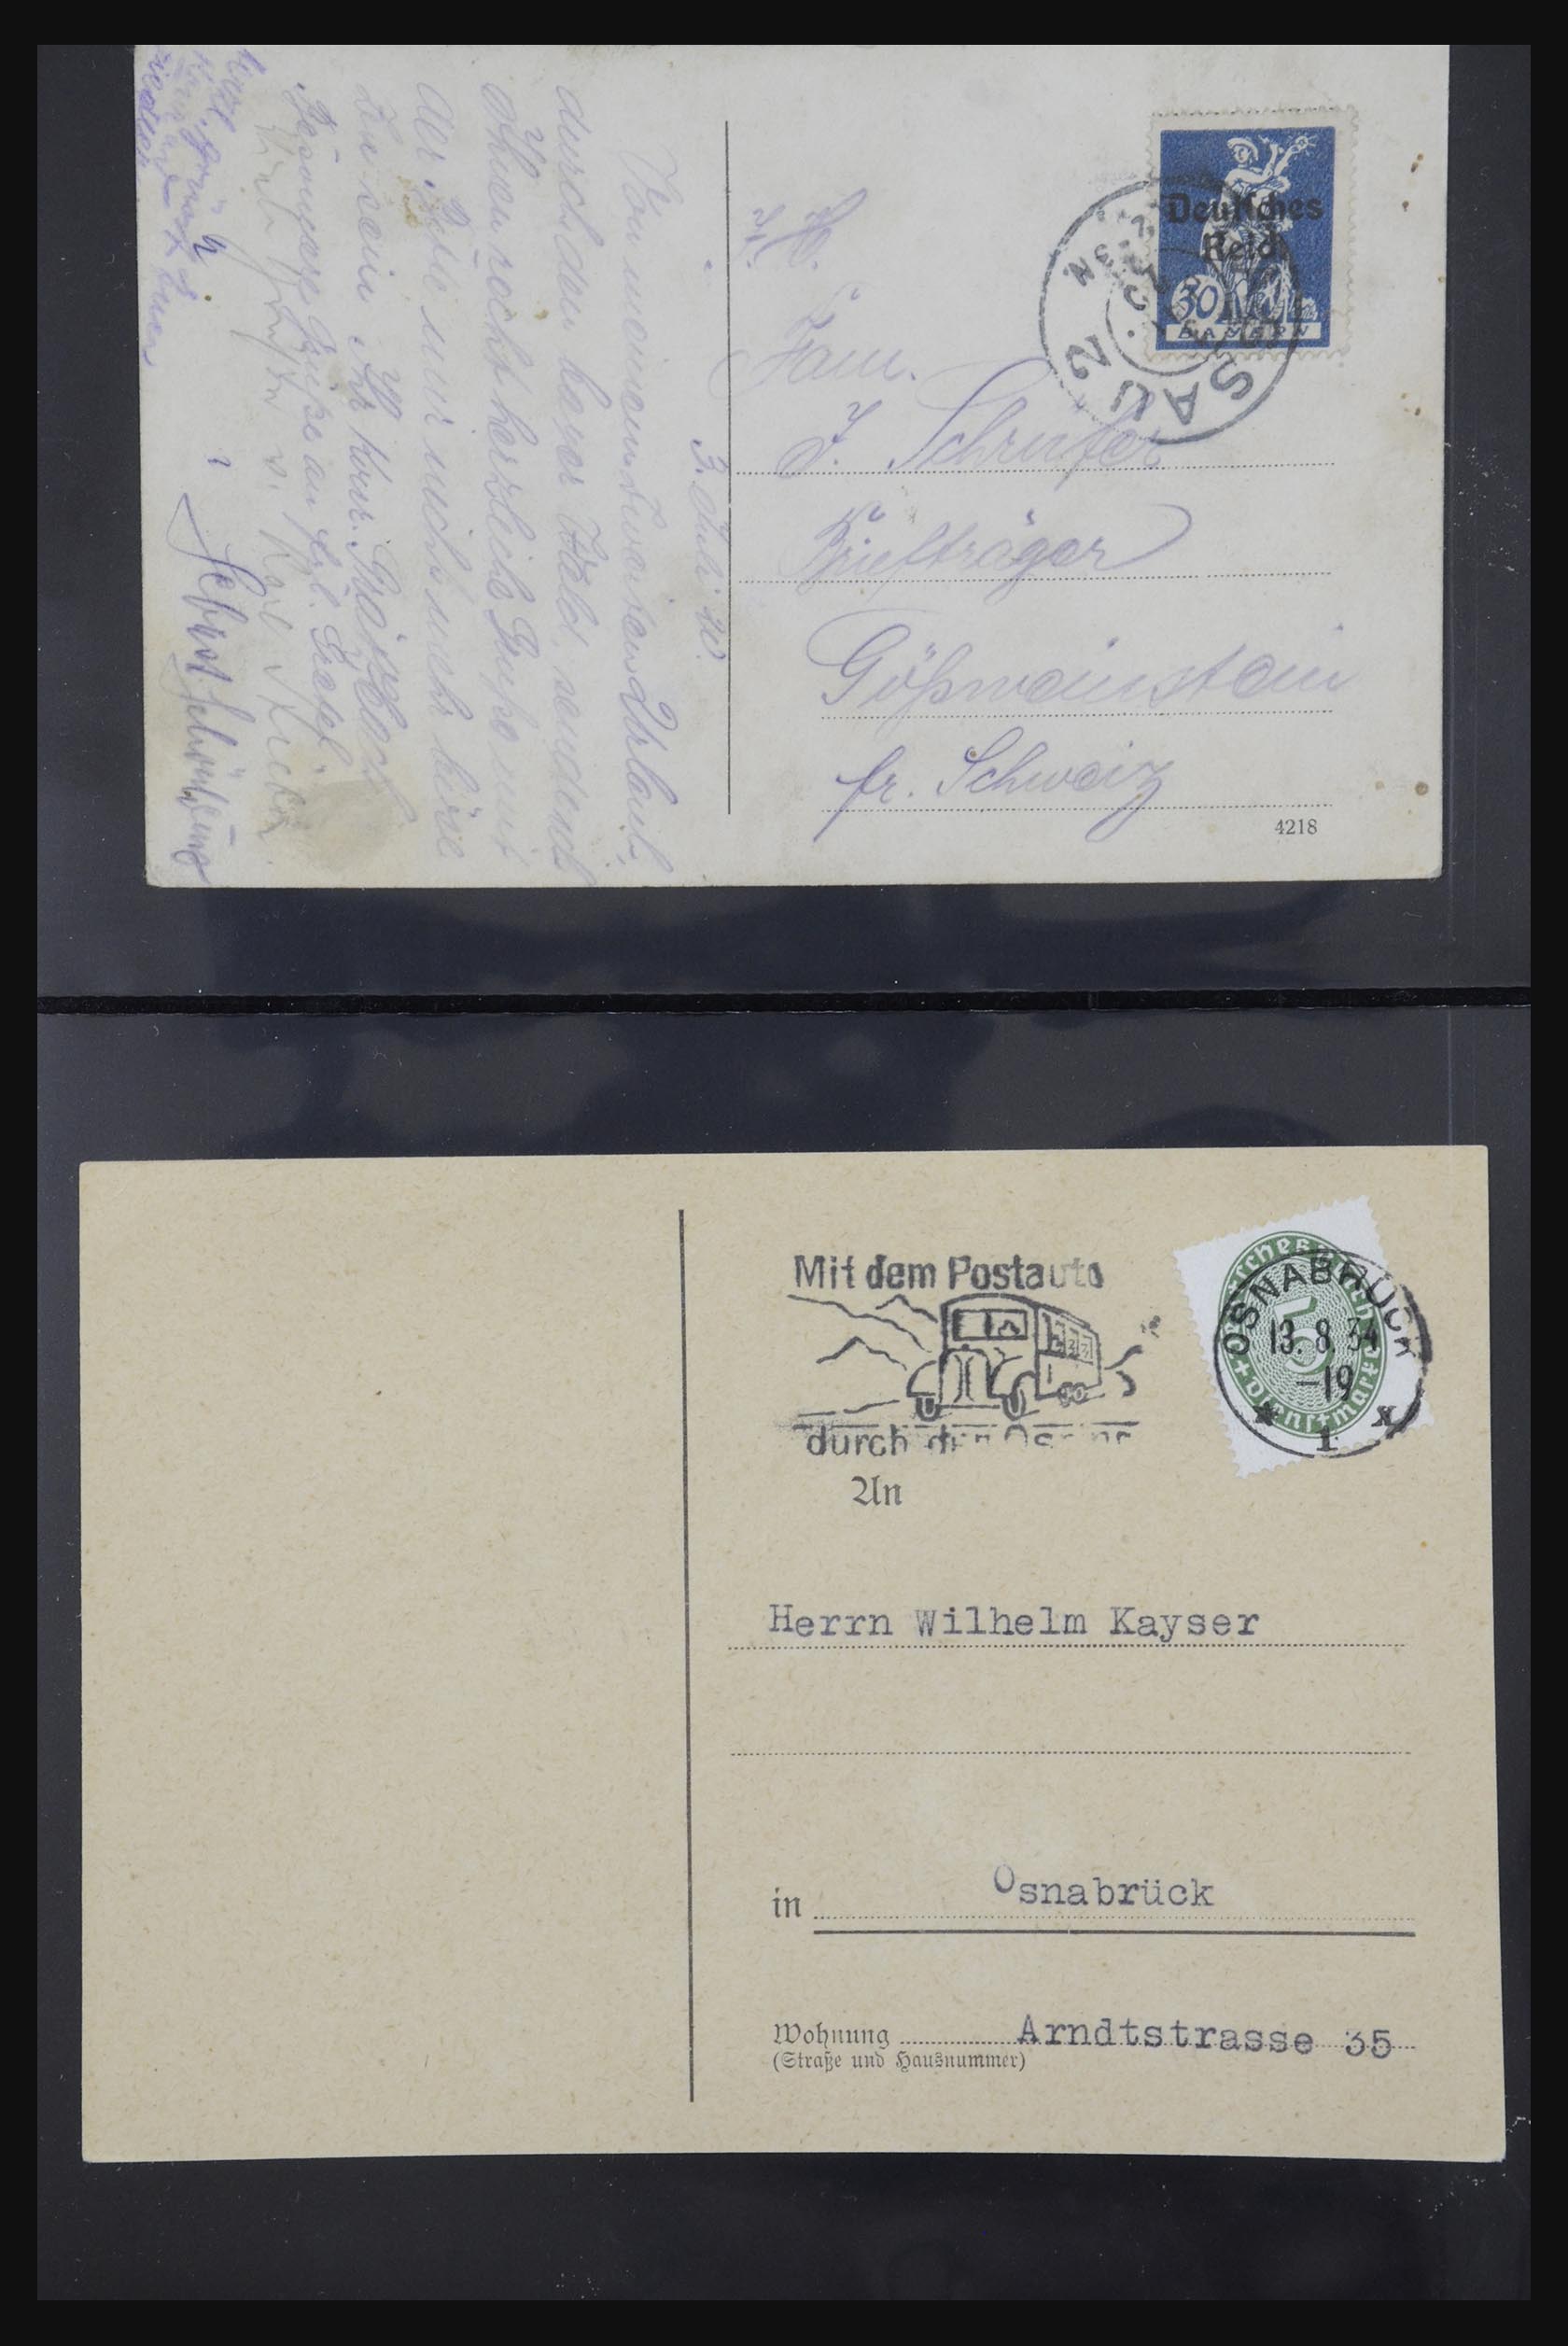 31952 405 - 31952 German Reich cards.